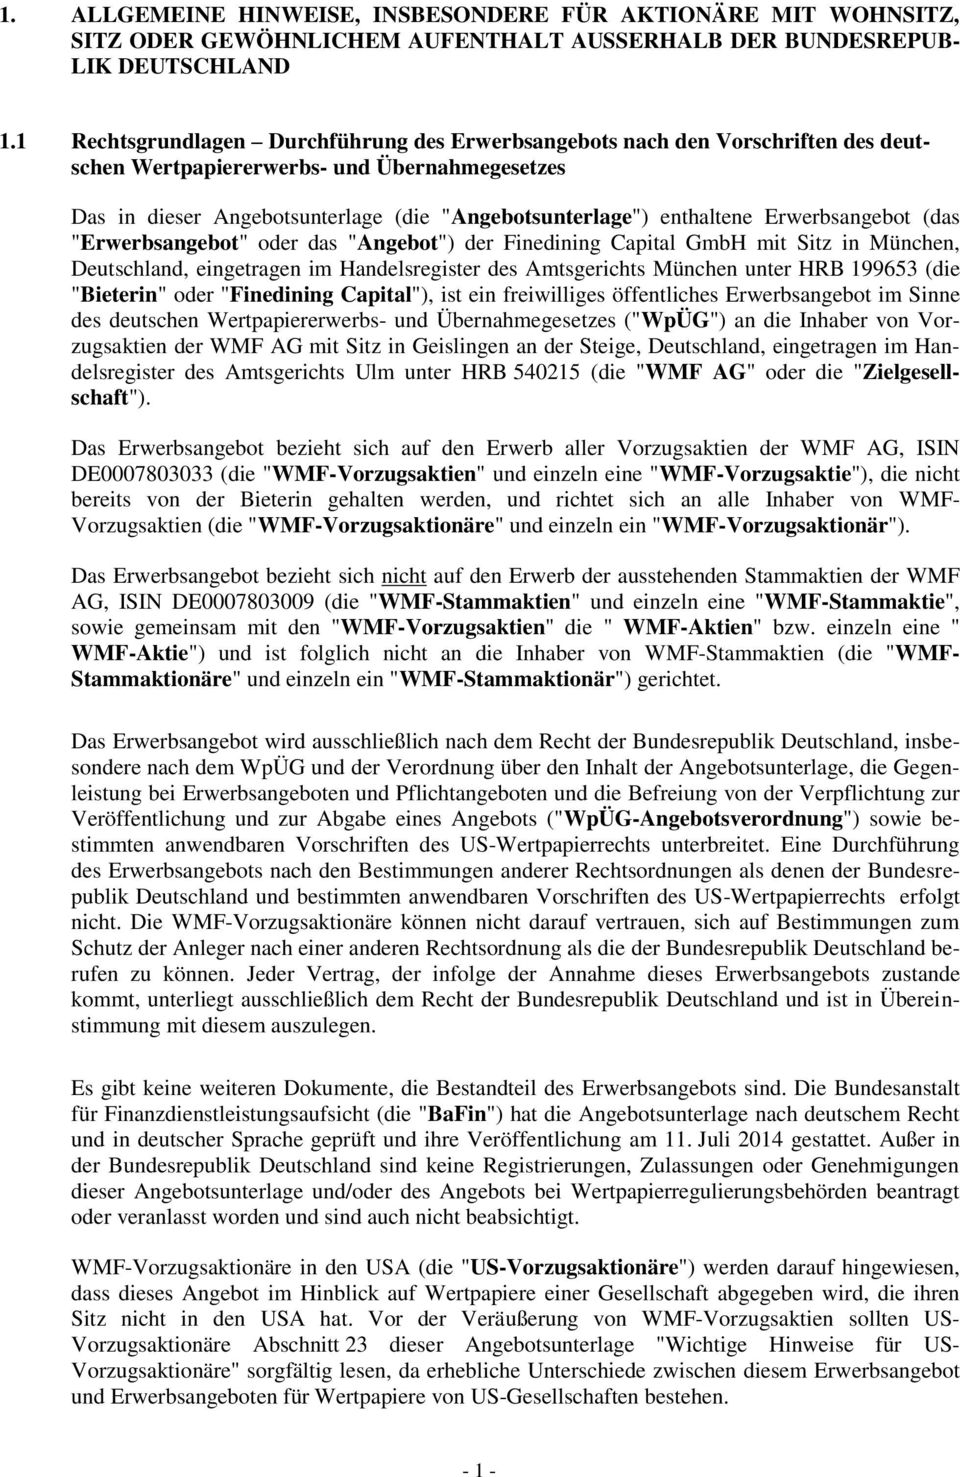 Erwerbsangebot (das "Erwerbsangebot" oder das "Angebot") der Finedining Capital GmbH mit Sitz in München, Deutschland, eingetragen im Handelsregister des Amtsgerichts München unter HRB 199653 (die